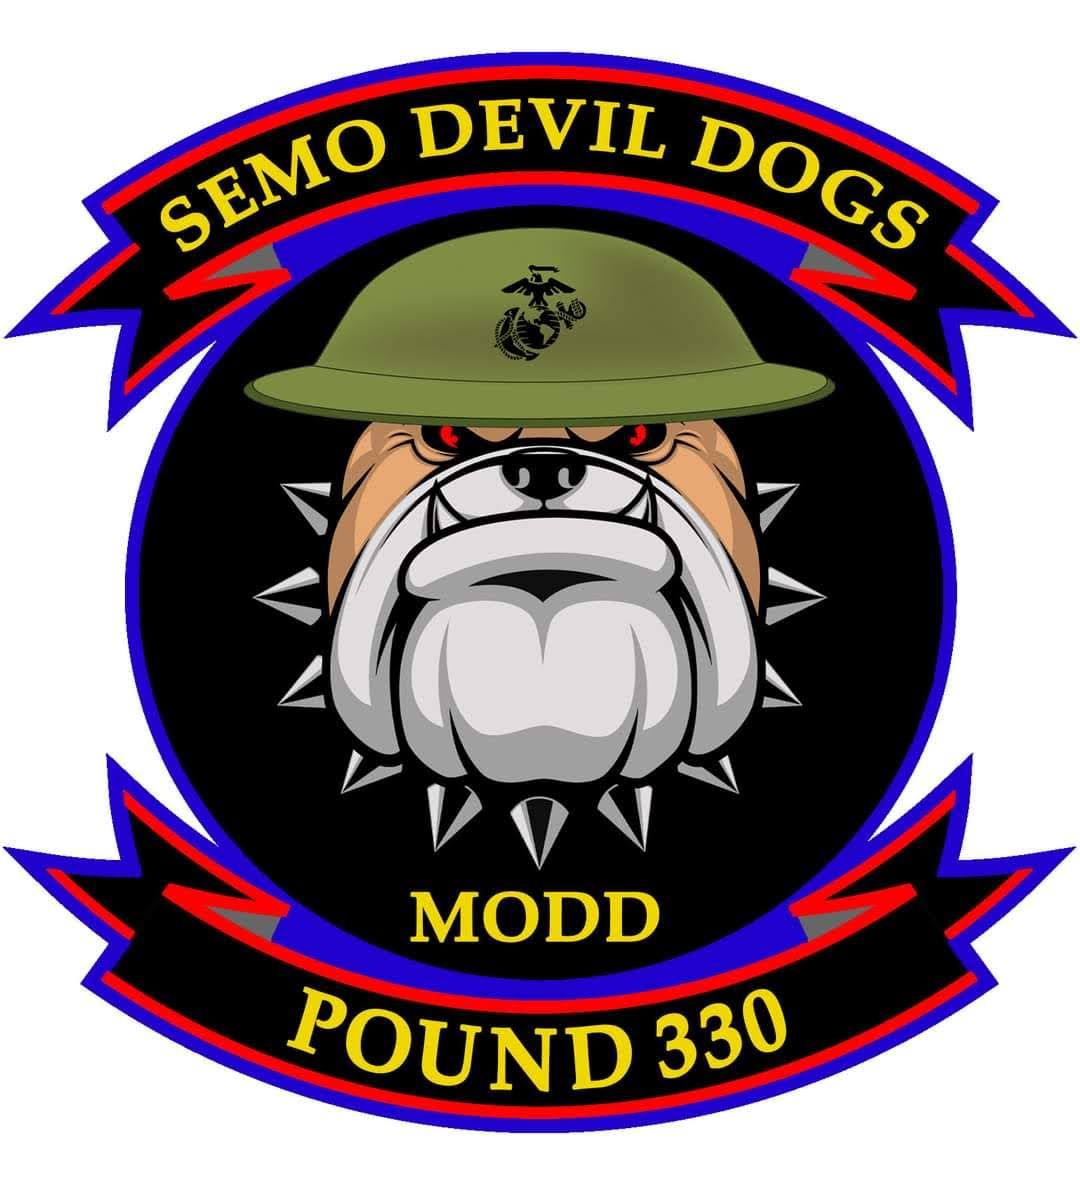 Pound 330 SEMO Devil Dogs